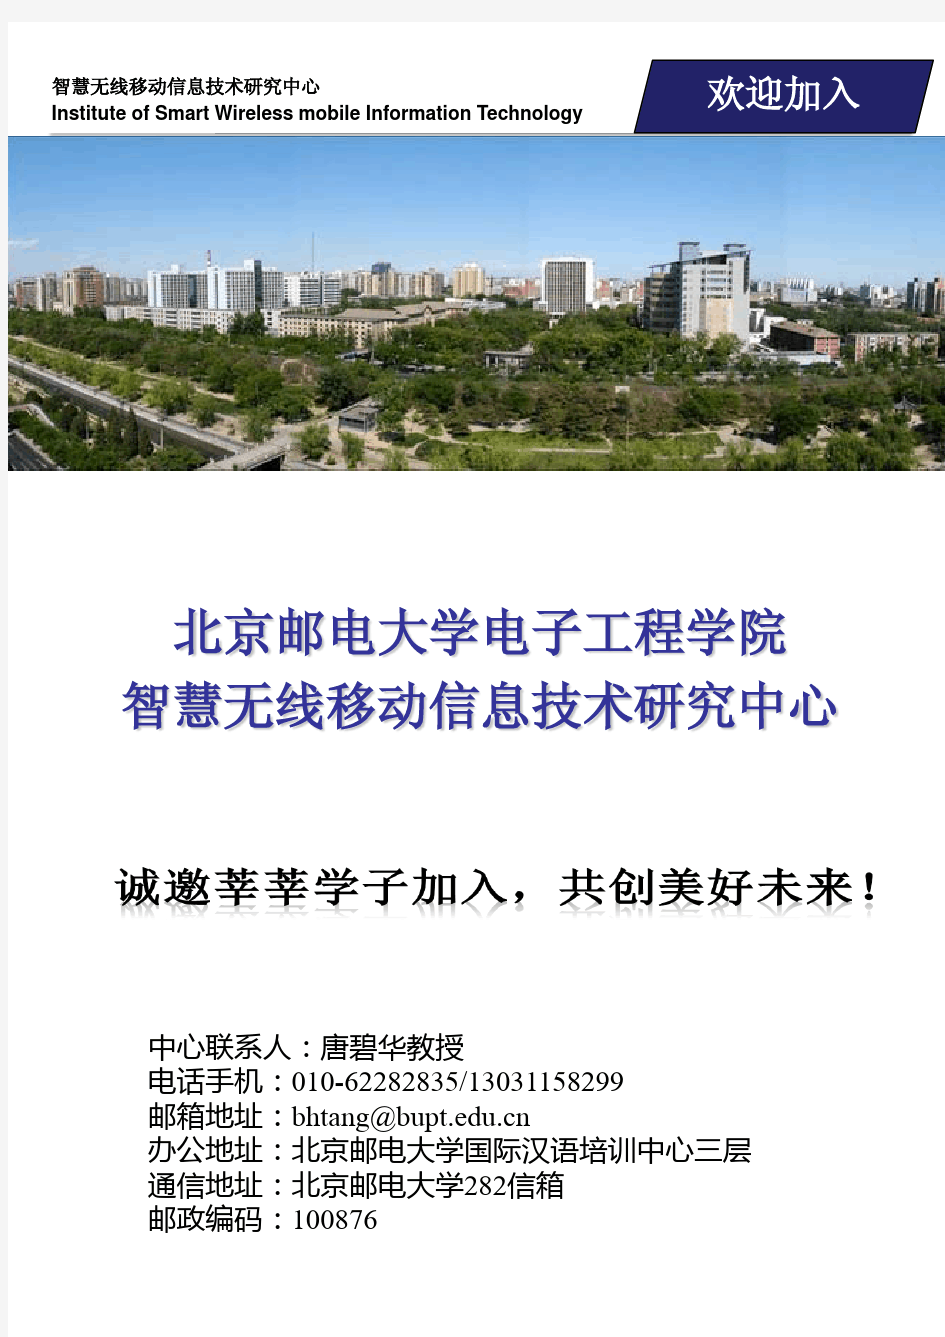 北京邮电大学智慧无线移动信息技术研究中心宣传手册2015年